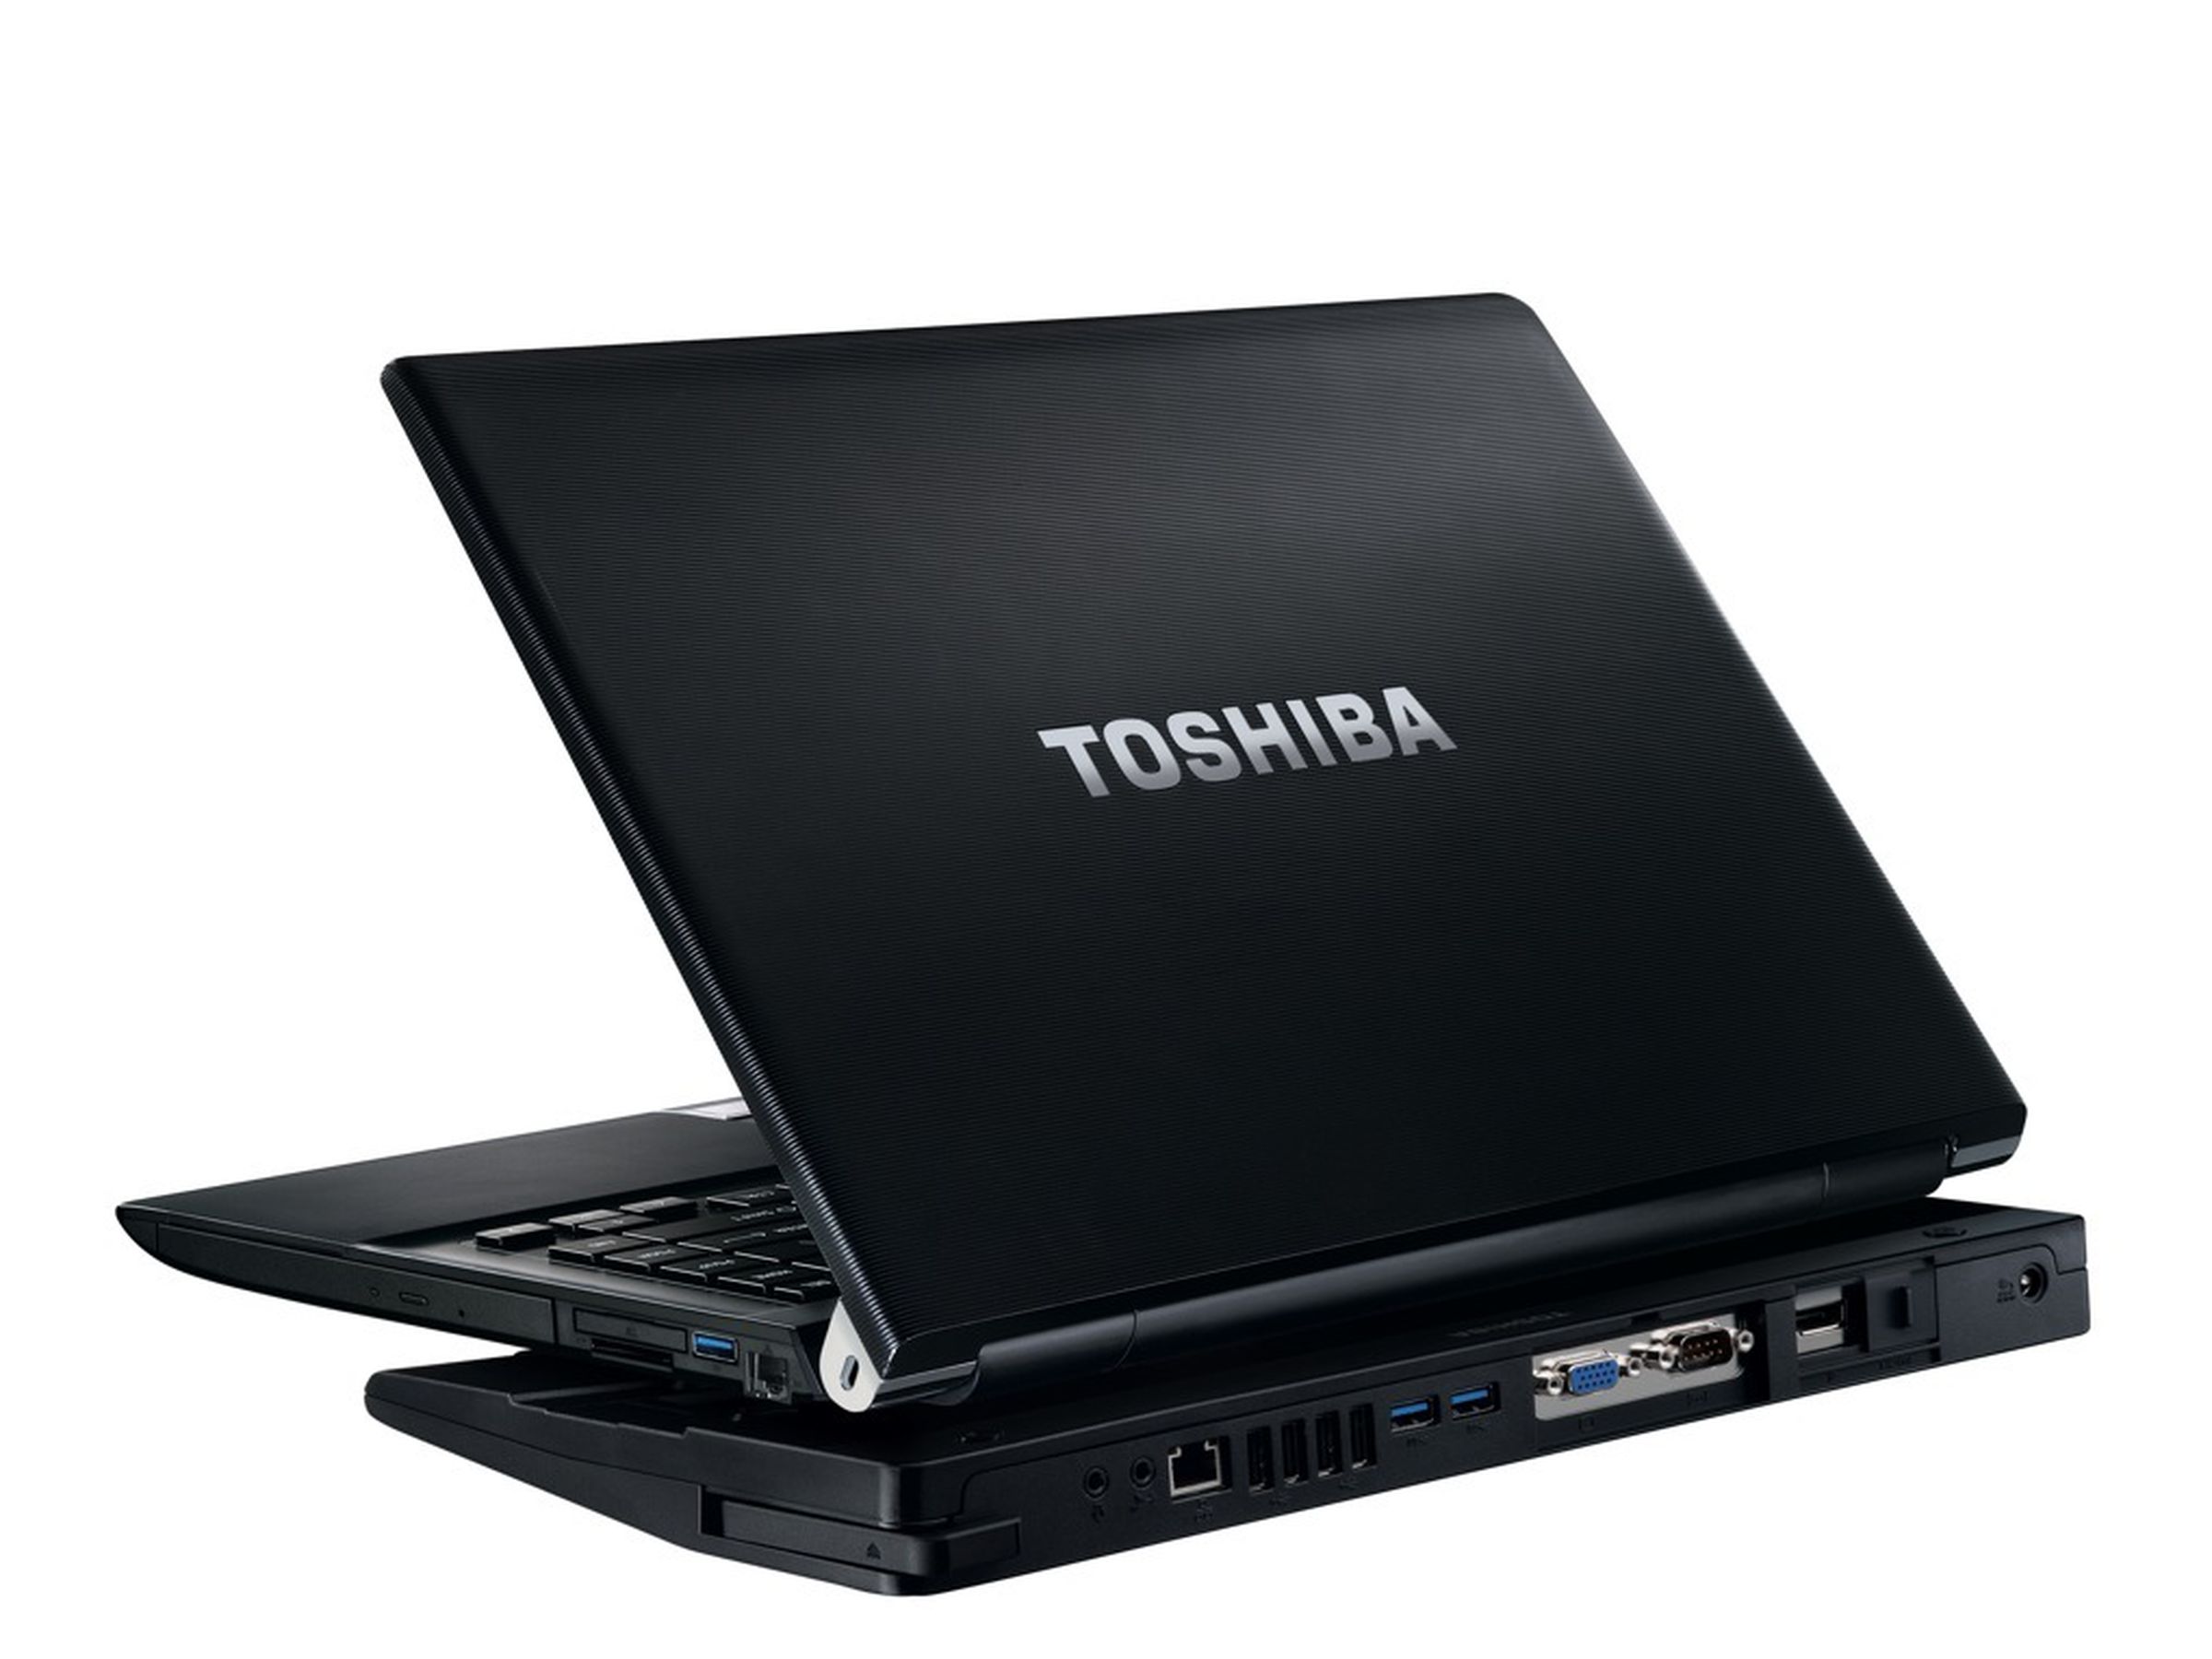 Toshiba Portege R930, Tecra R940 and Tecra R950 images